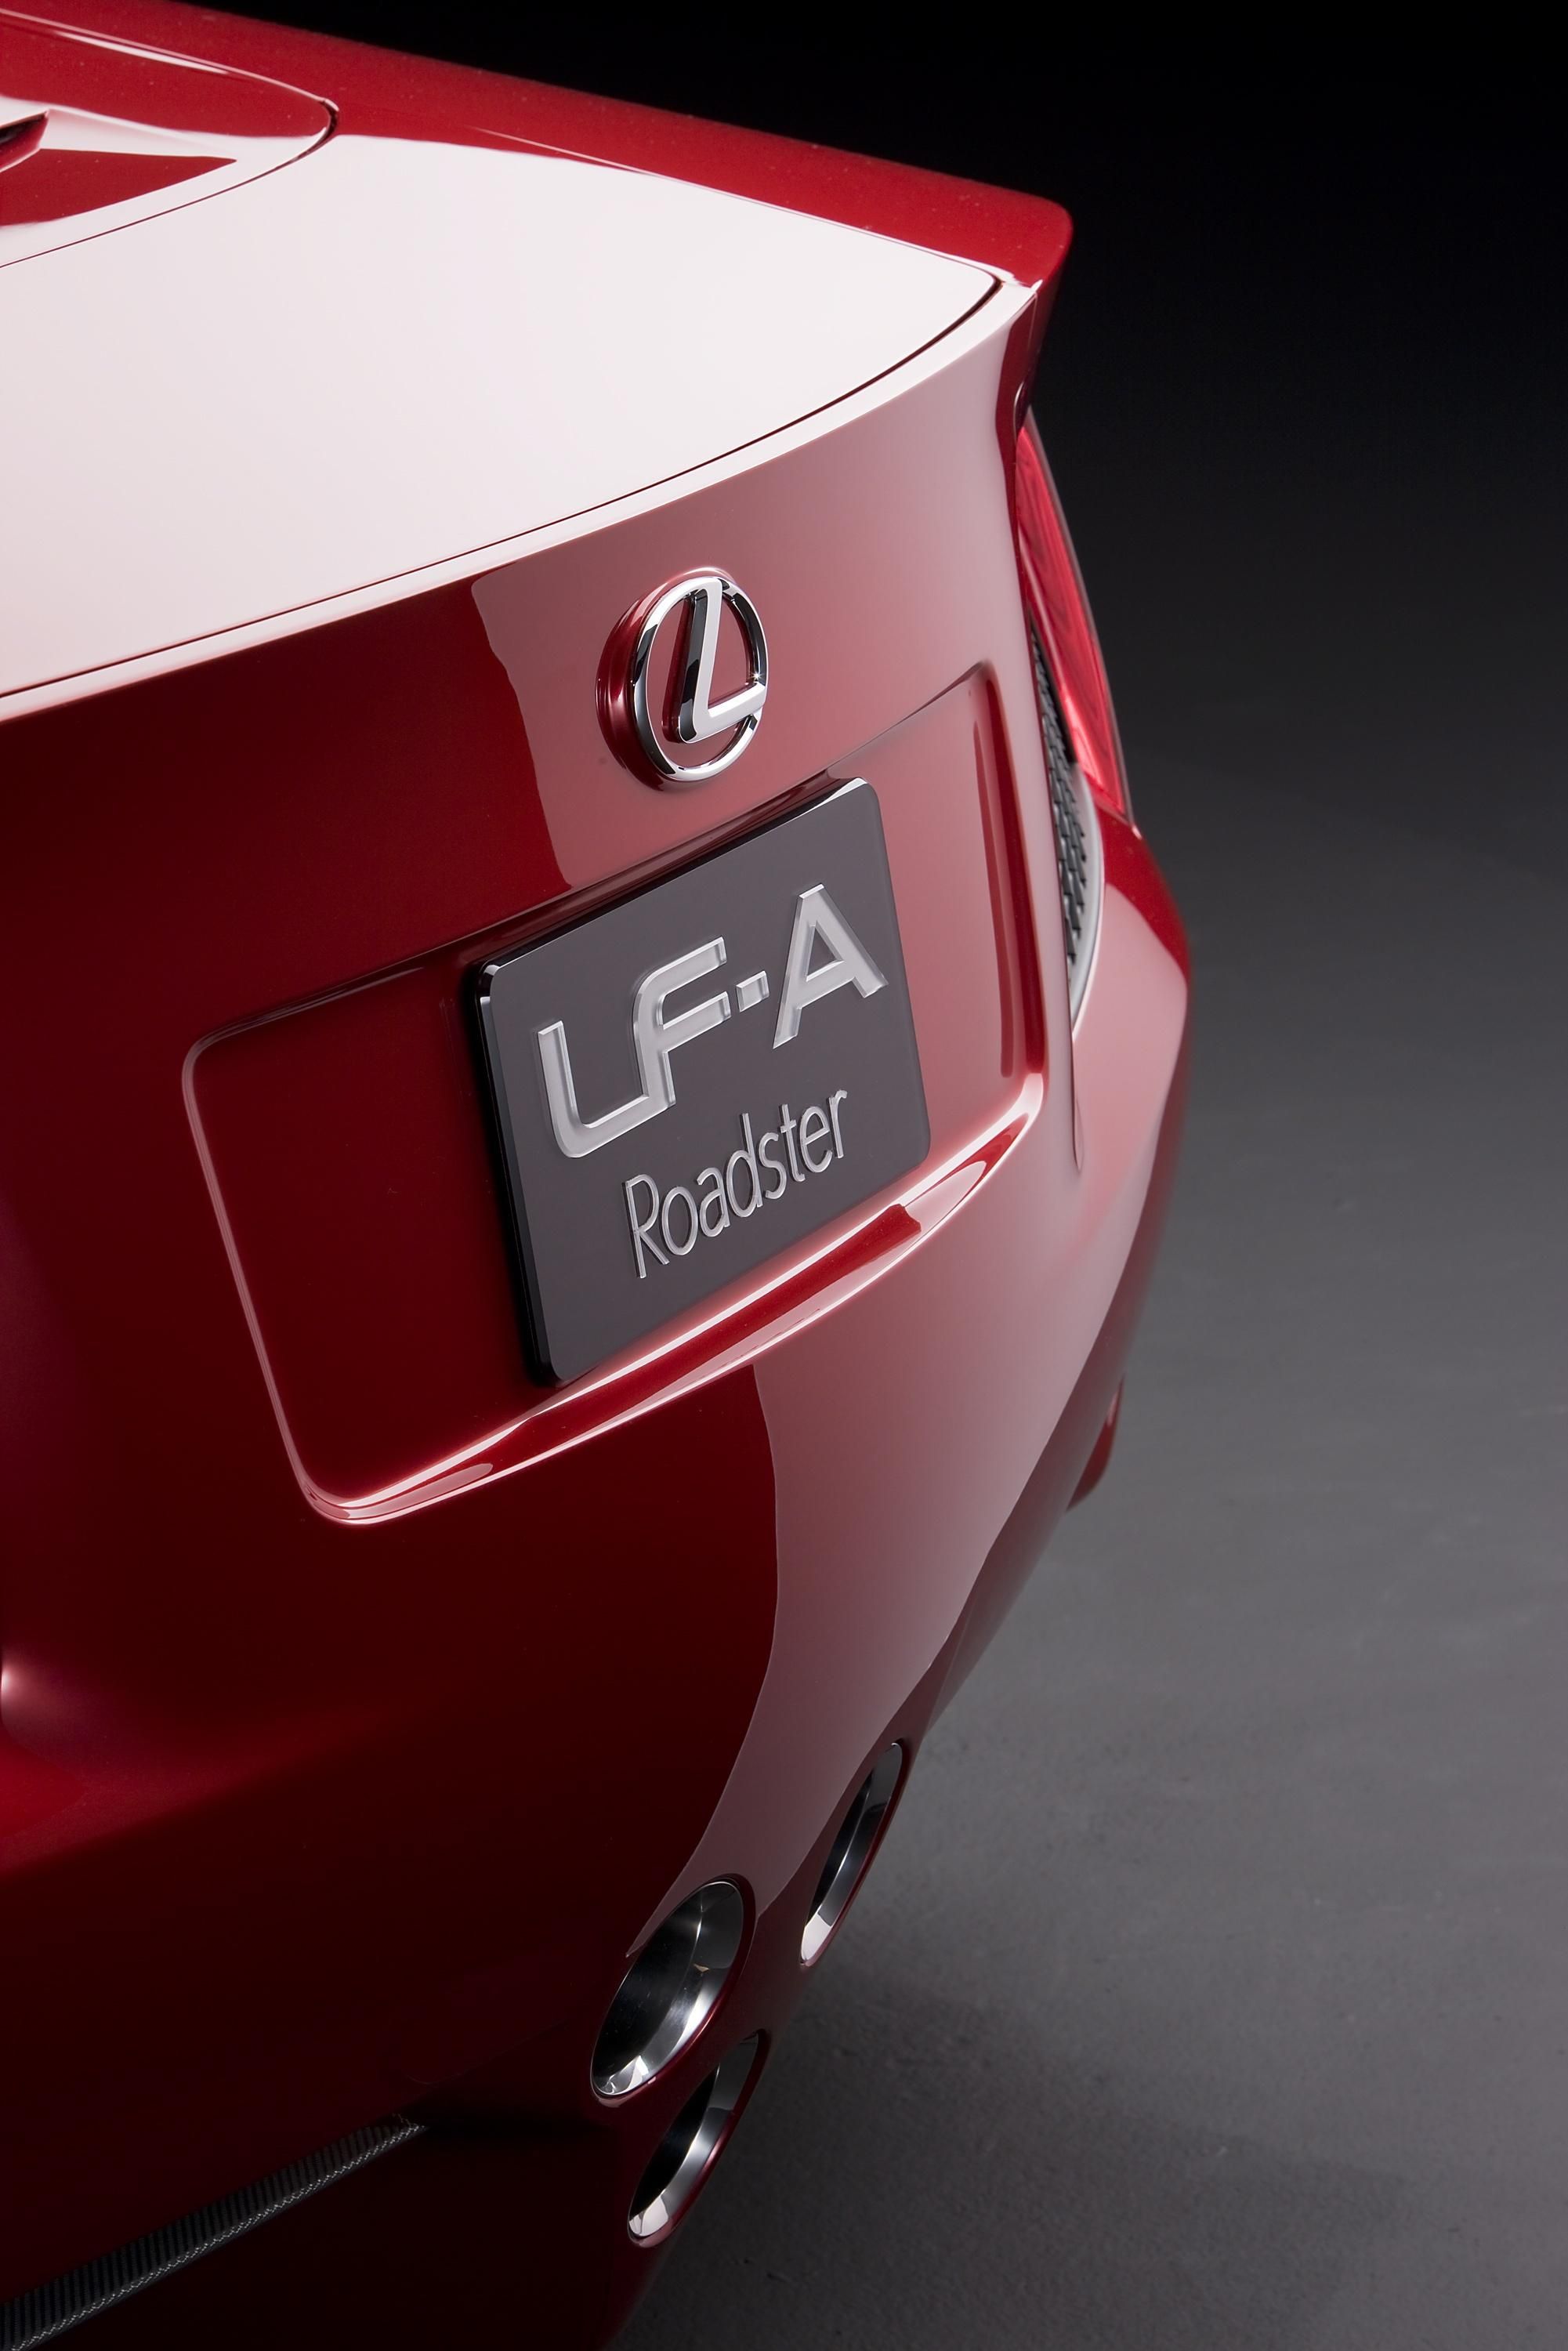 2008 Lexus LF-A Roadster